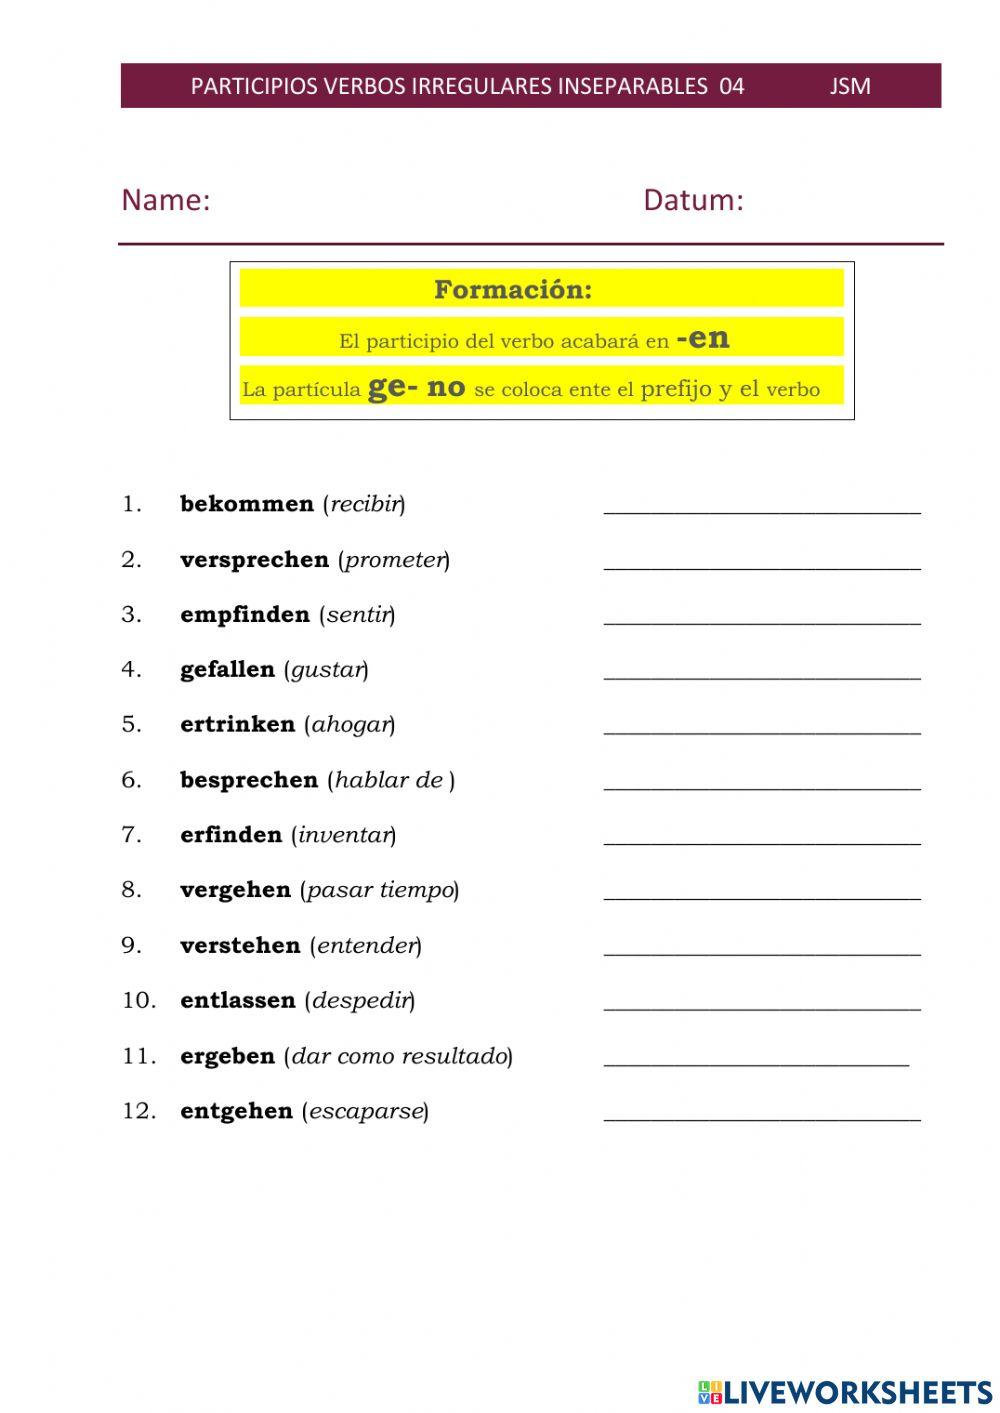 Participios irregulares verbos inseparables 04